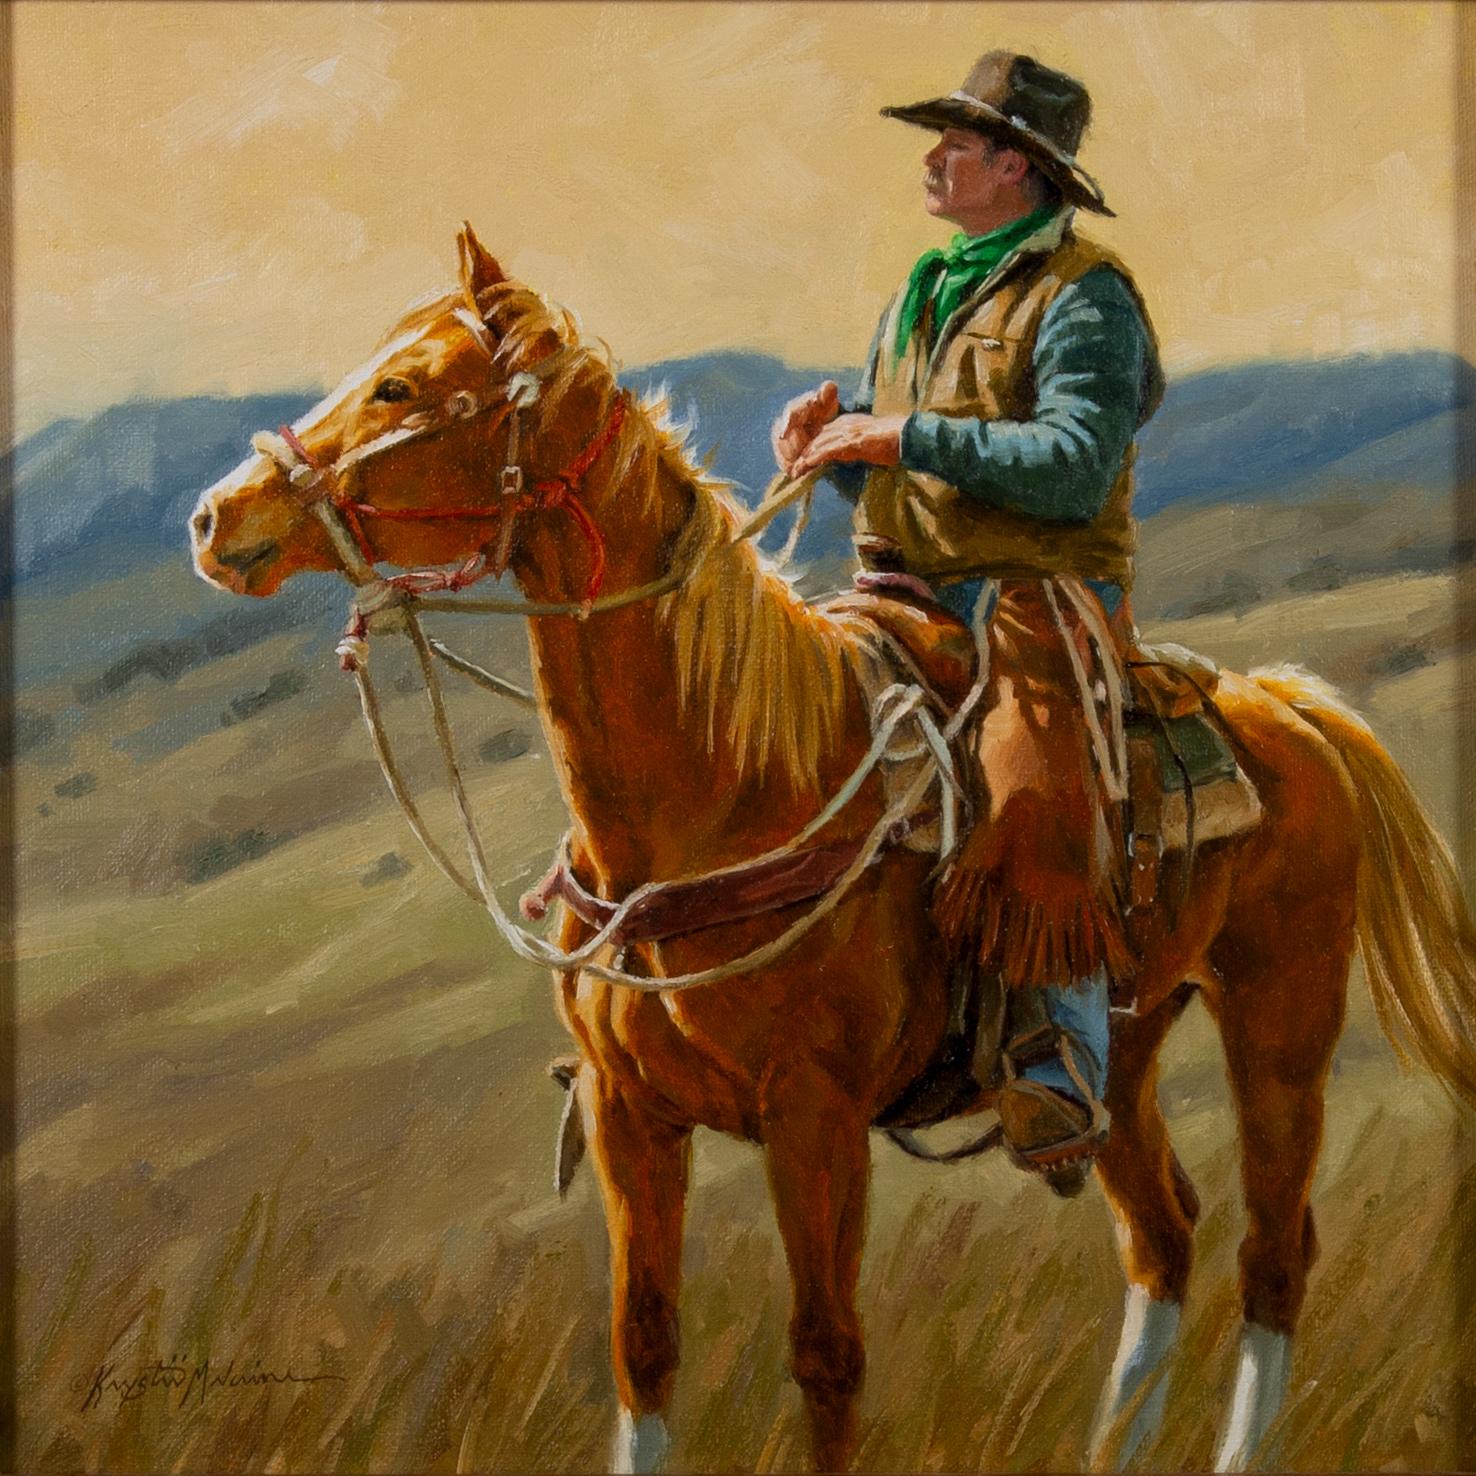 Can You See 'Em, Cowboy on Horseback, peinture à l'huile sur toile, art occidental - Painting de Krystii Melaine